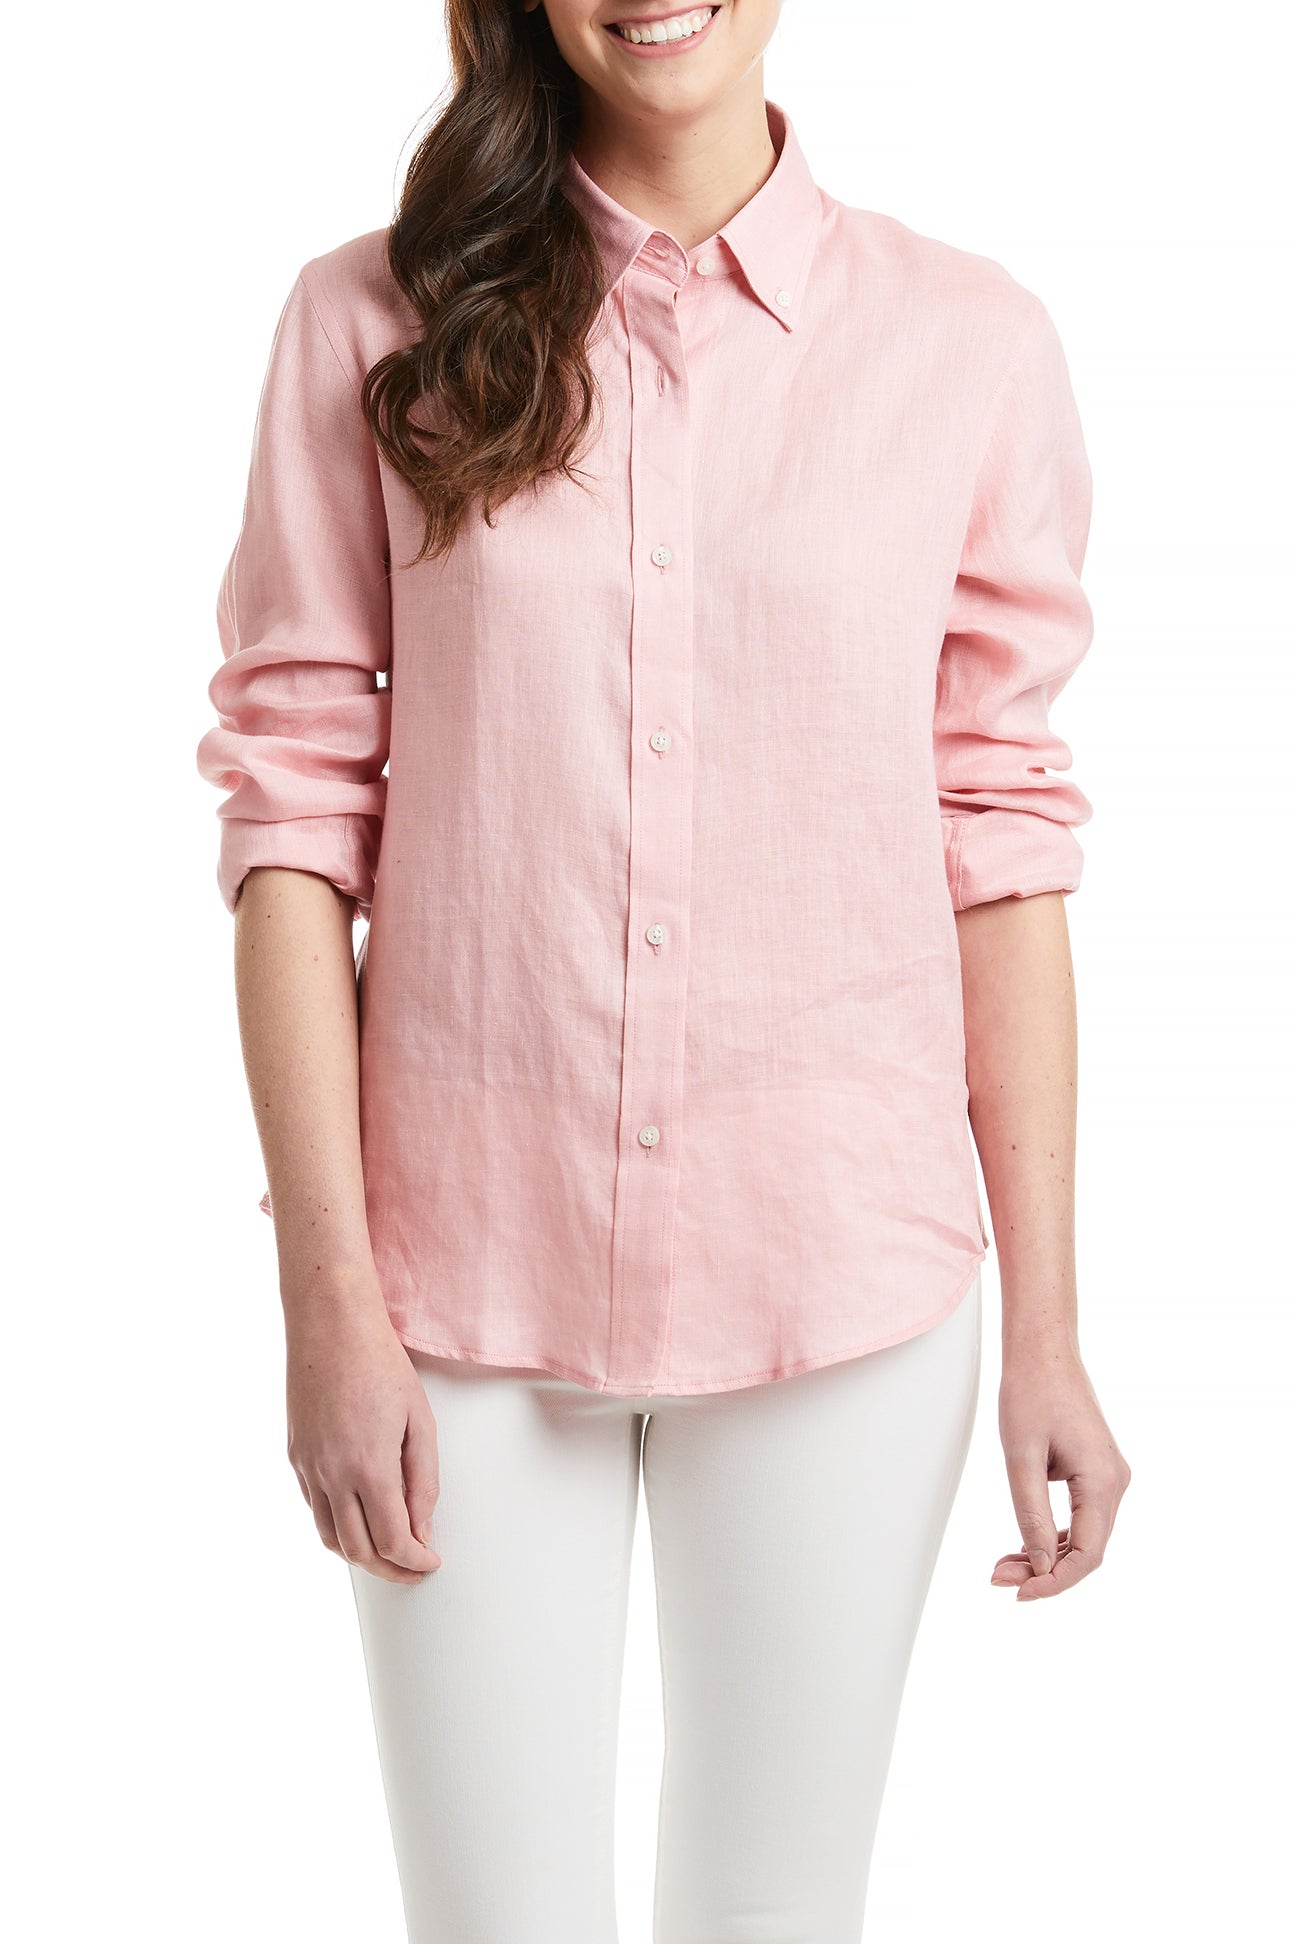 Ladies Summer Button Down Long Seelve Shirt Pink Linen